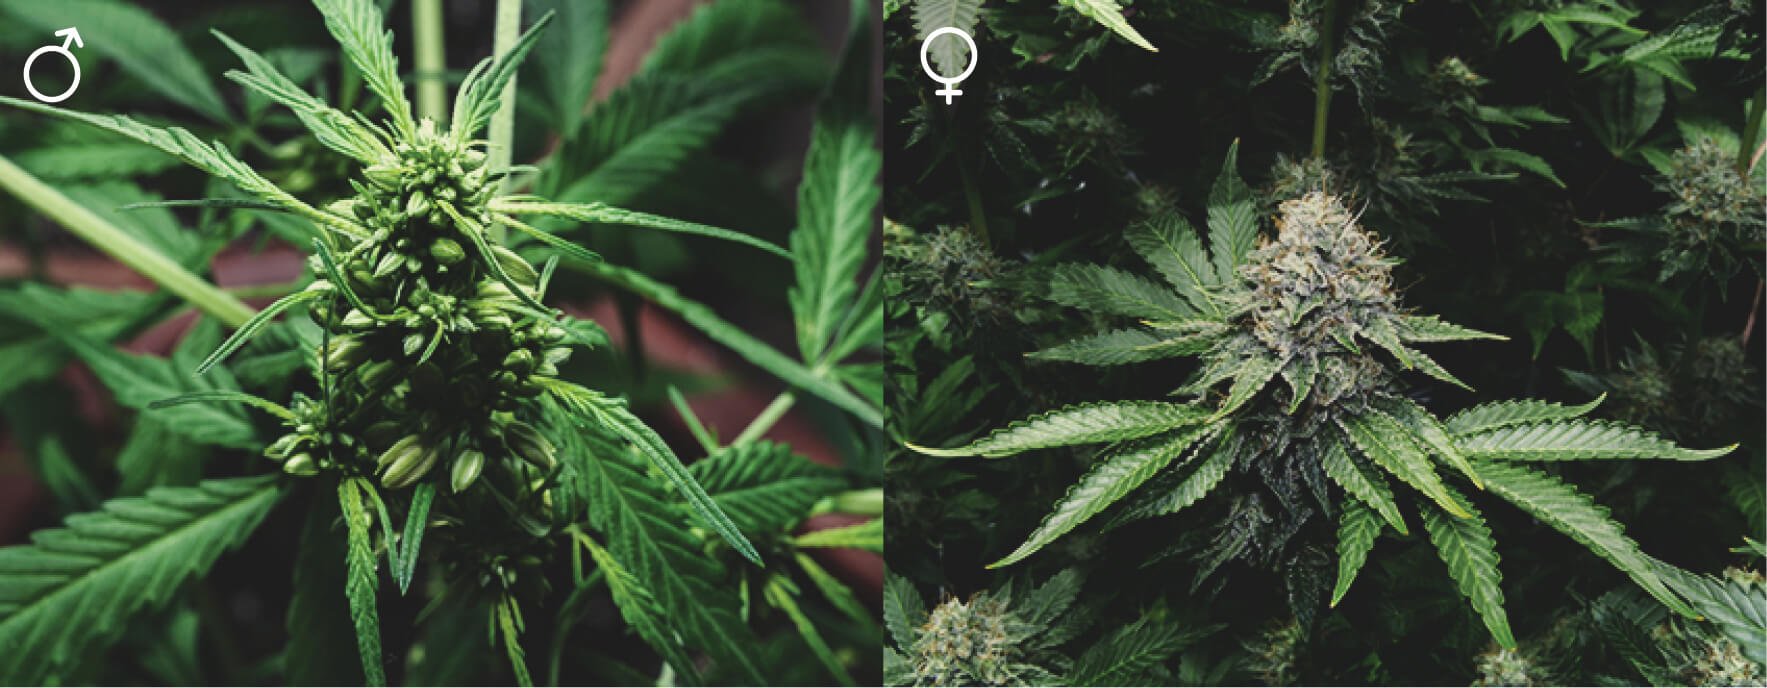 ¿Todas las plantas de marihuana son iguales?